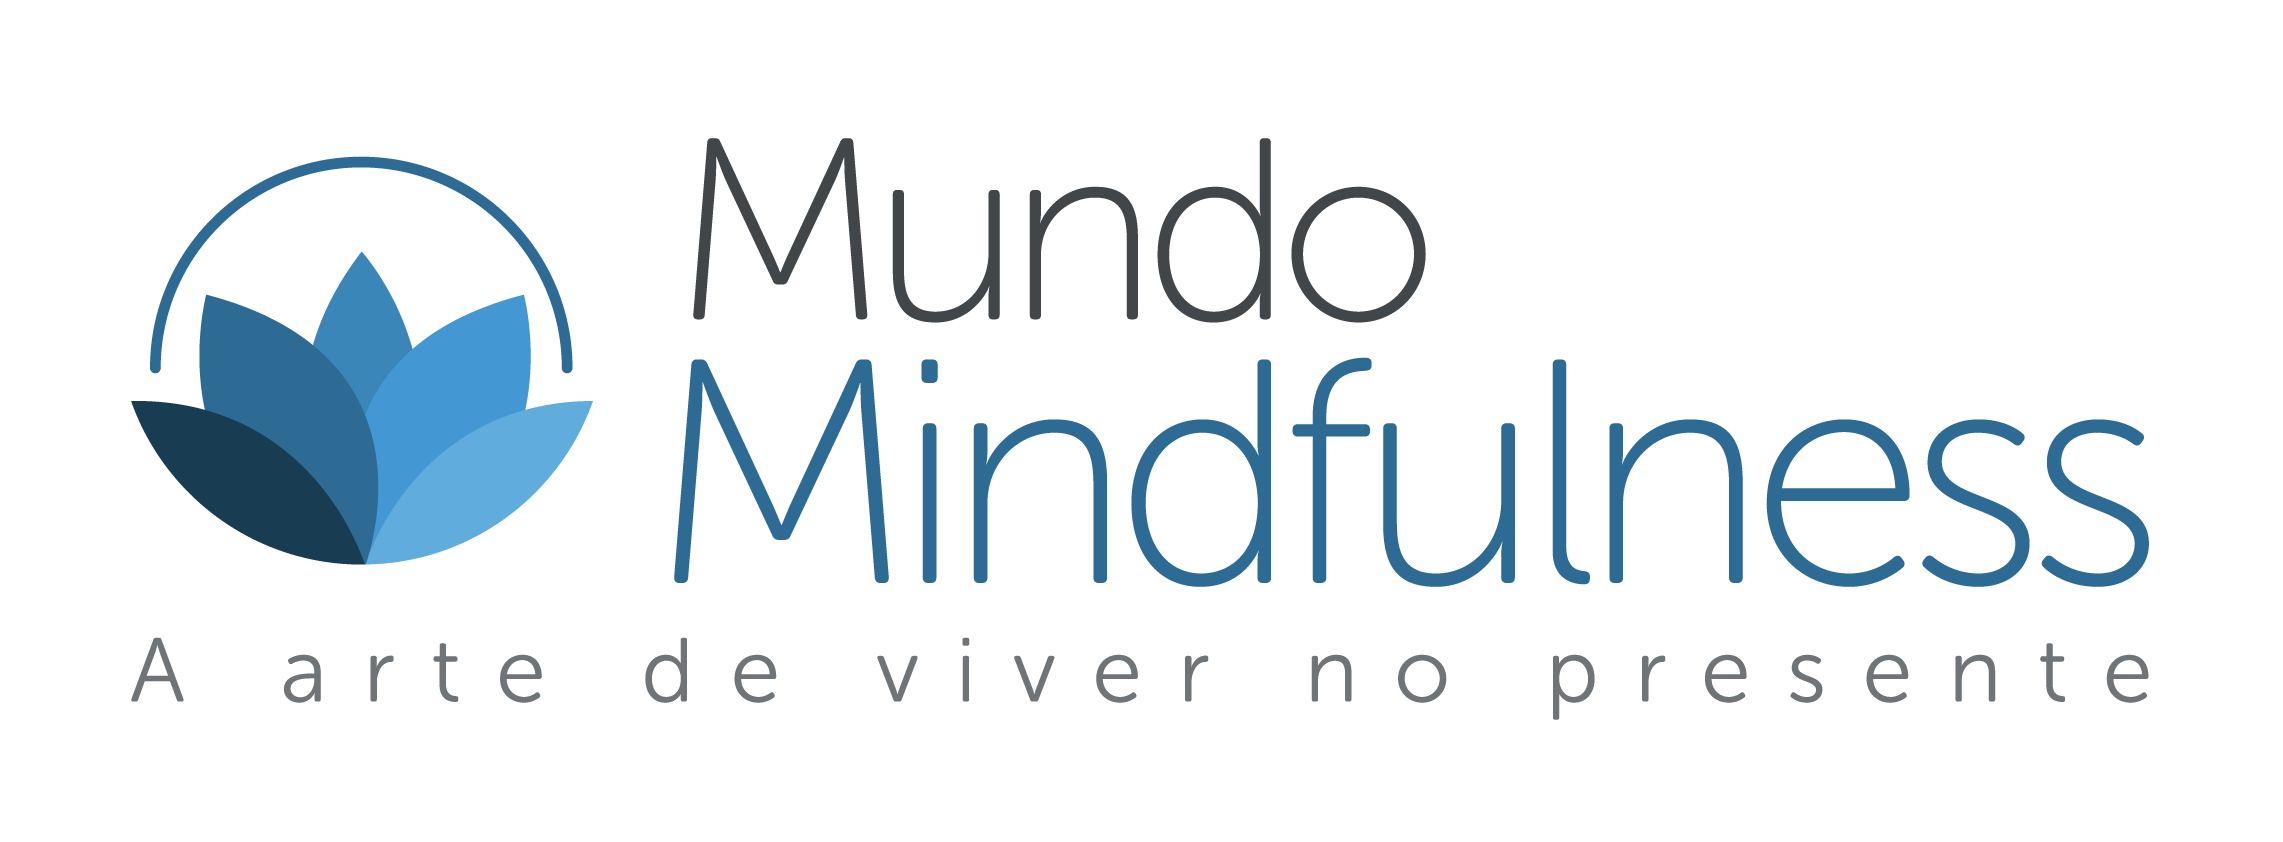 mundo_mindfulness_final_TAG-05